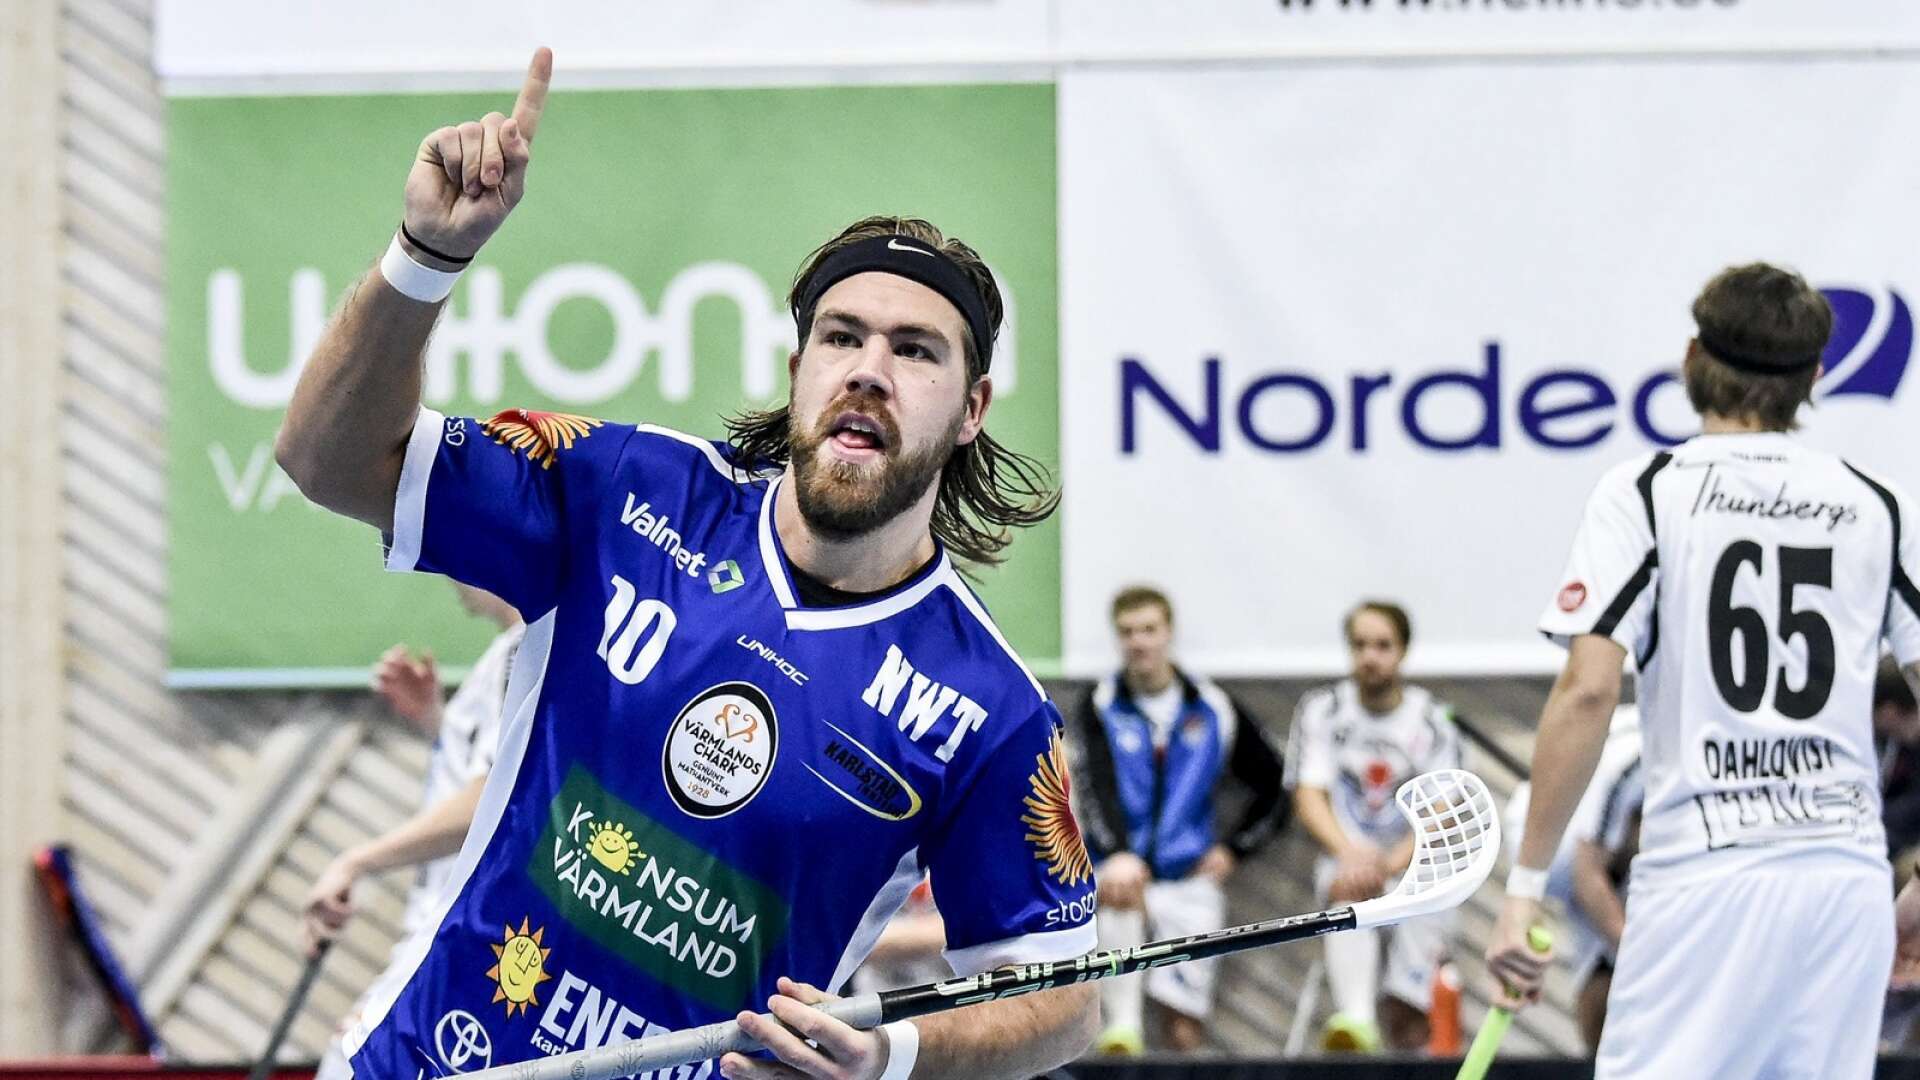 Förre lagkaptenen Erik Nilsson Allansson gör sensationell comeback i Karlstad IBF.